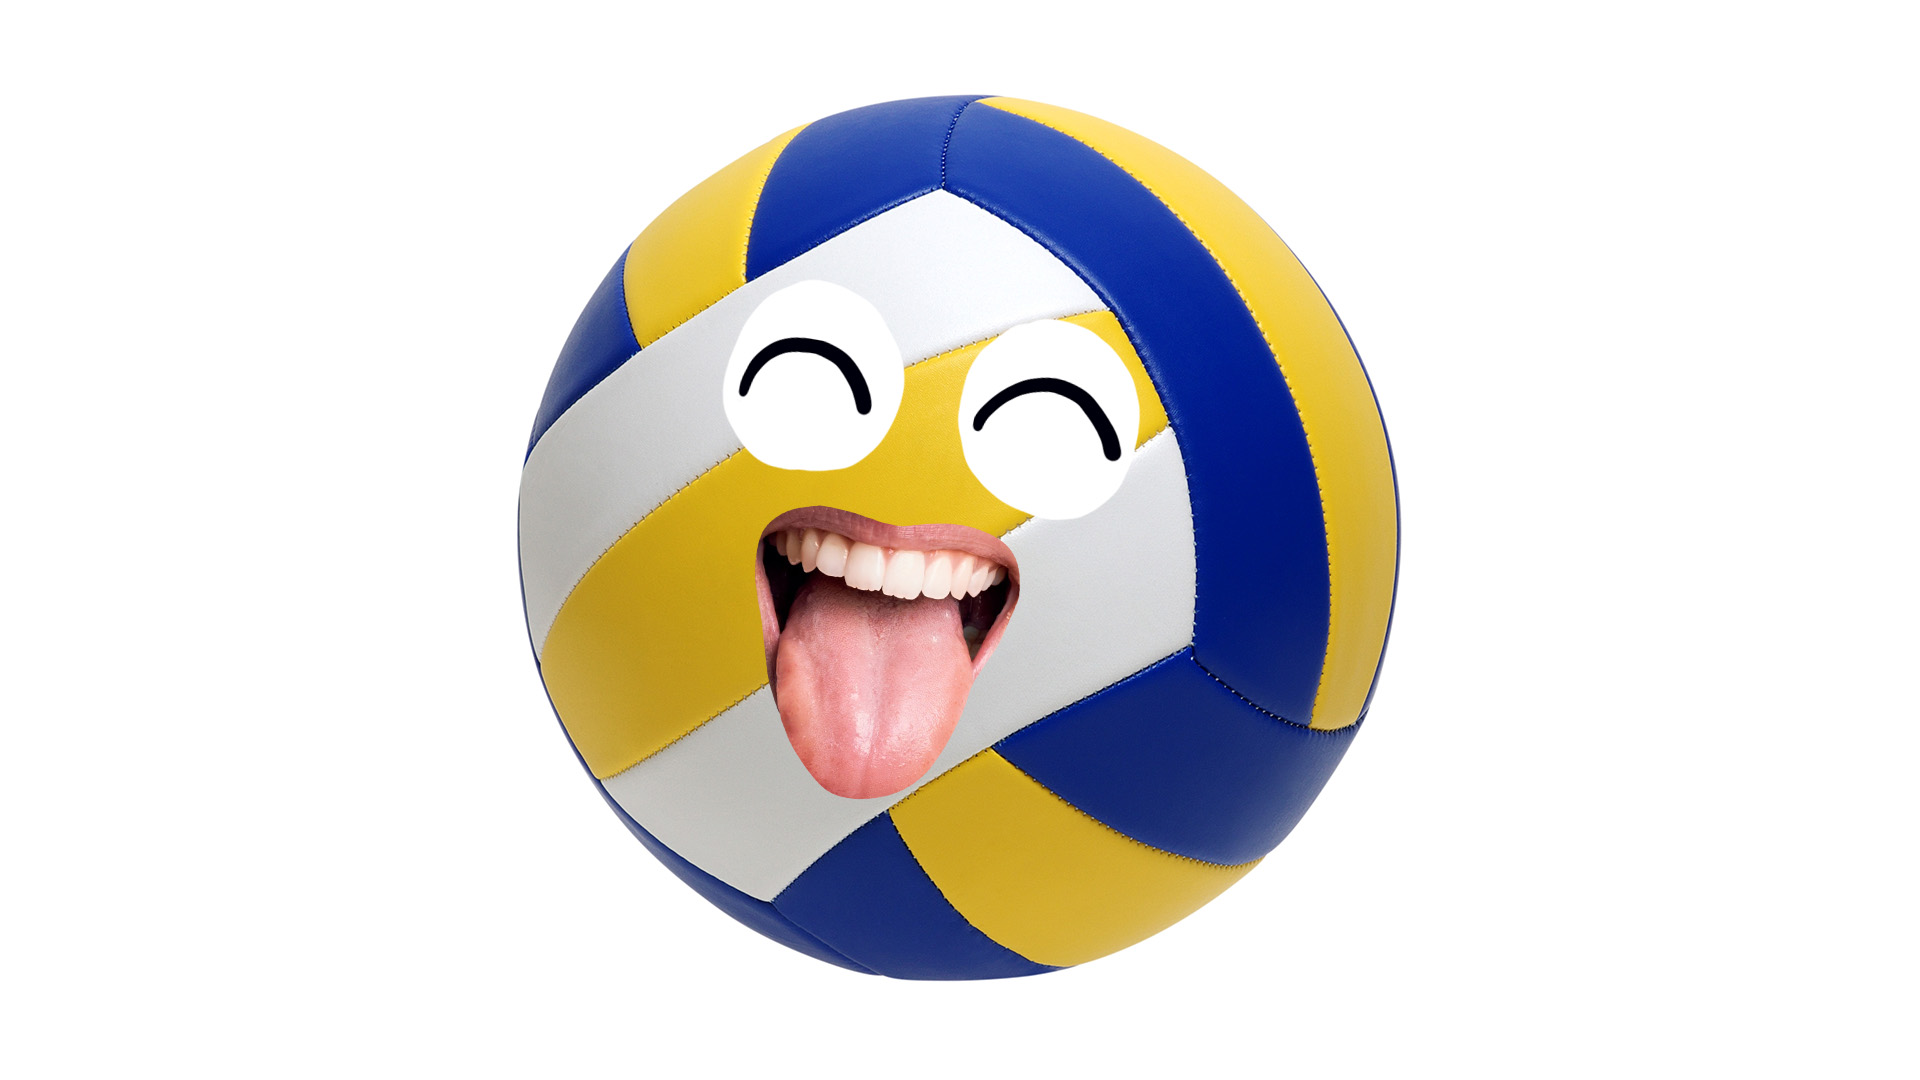 A smily ball